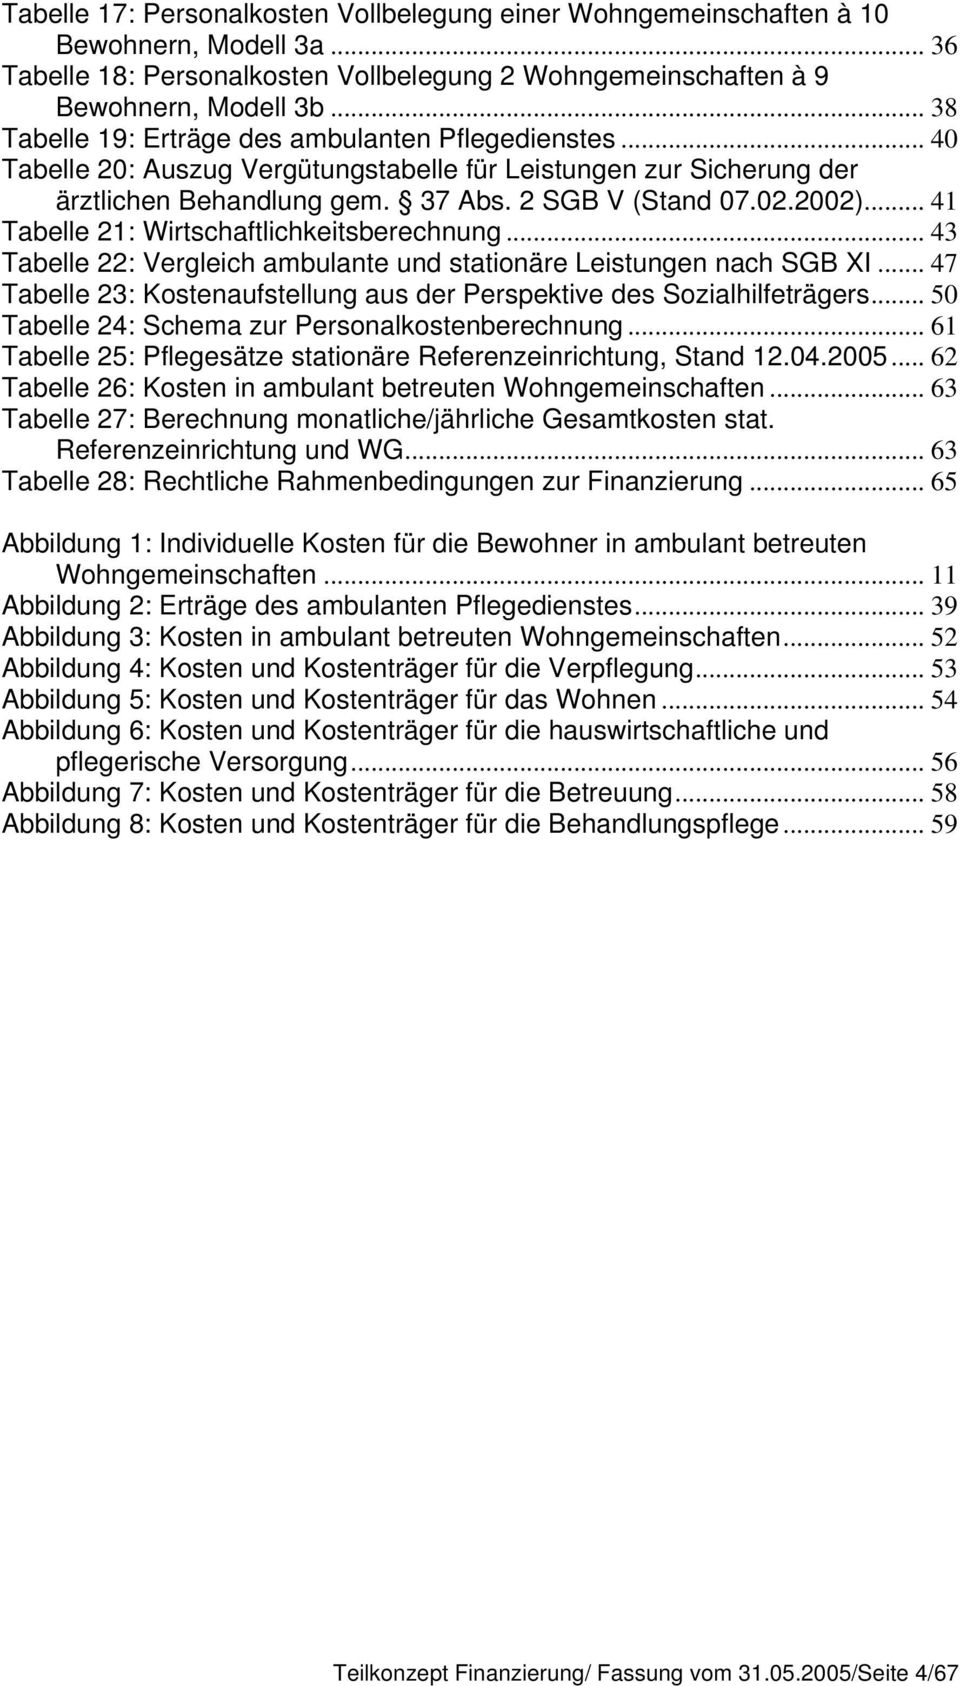 .. 41 Tabelle 21: Wirtschaftlichkeitsberechnung... 43 Tabelle 22: Vergleich ambulante und stationäre Leistungen nach SGB XI.